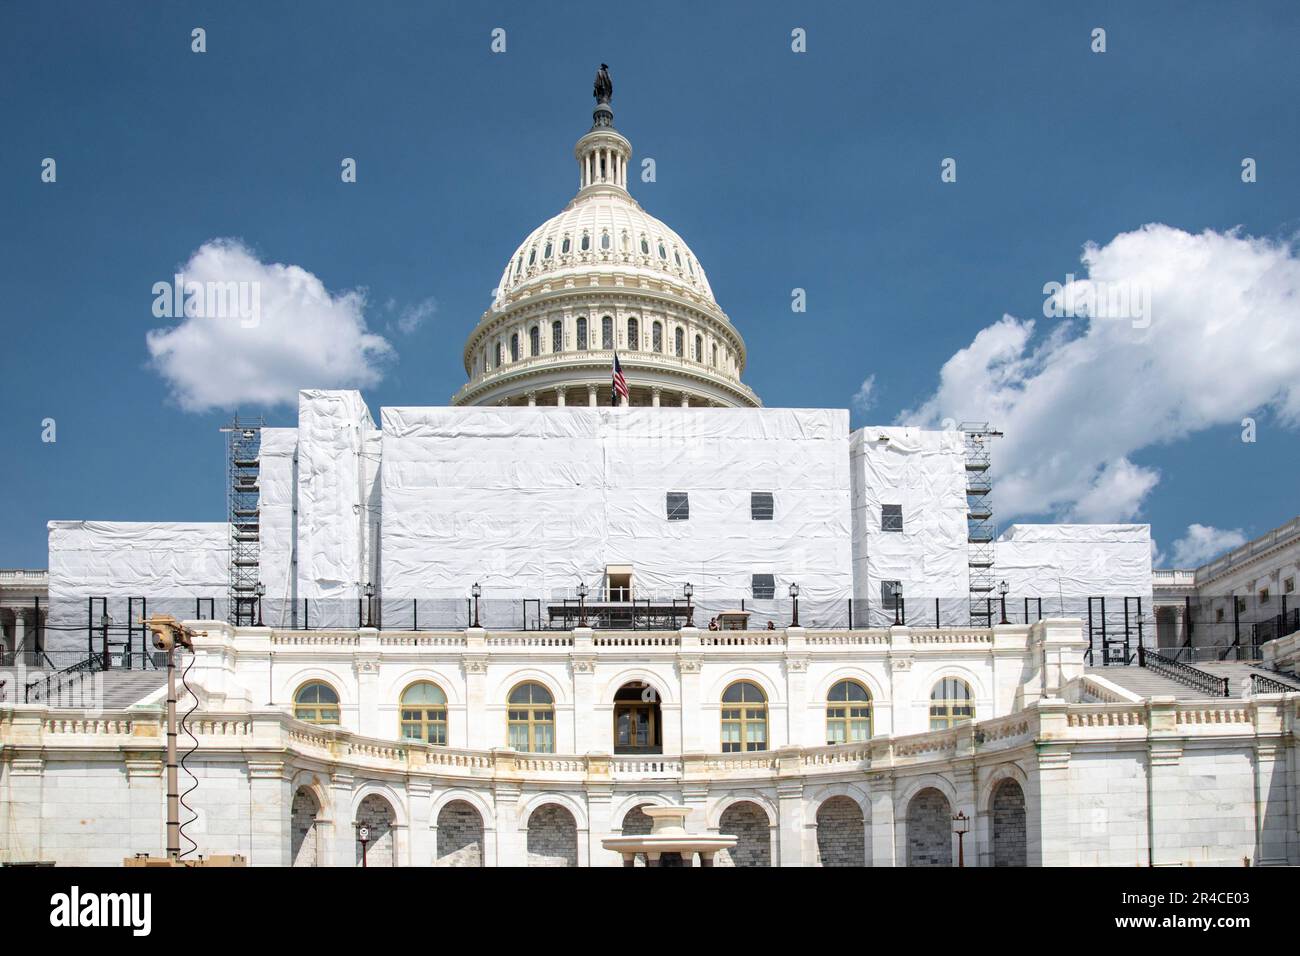 Washington, DC - Reparaciones en curso en el frente oeste de los Estados Unidos Edificio del Capitolio. El proyecto está destinado a limpiar y reparar el edificio histórico Foto de stock